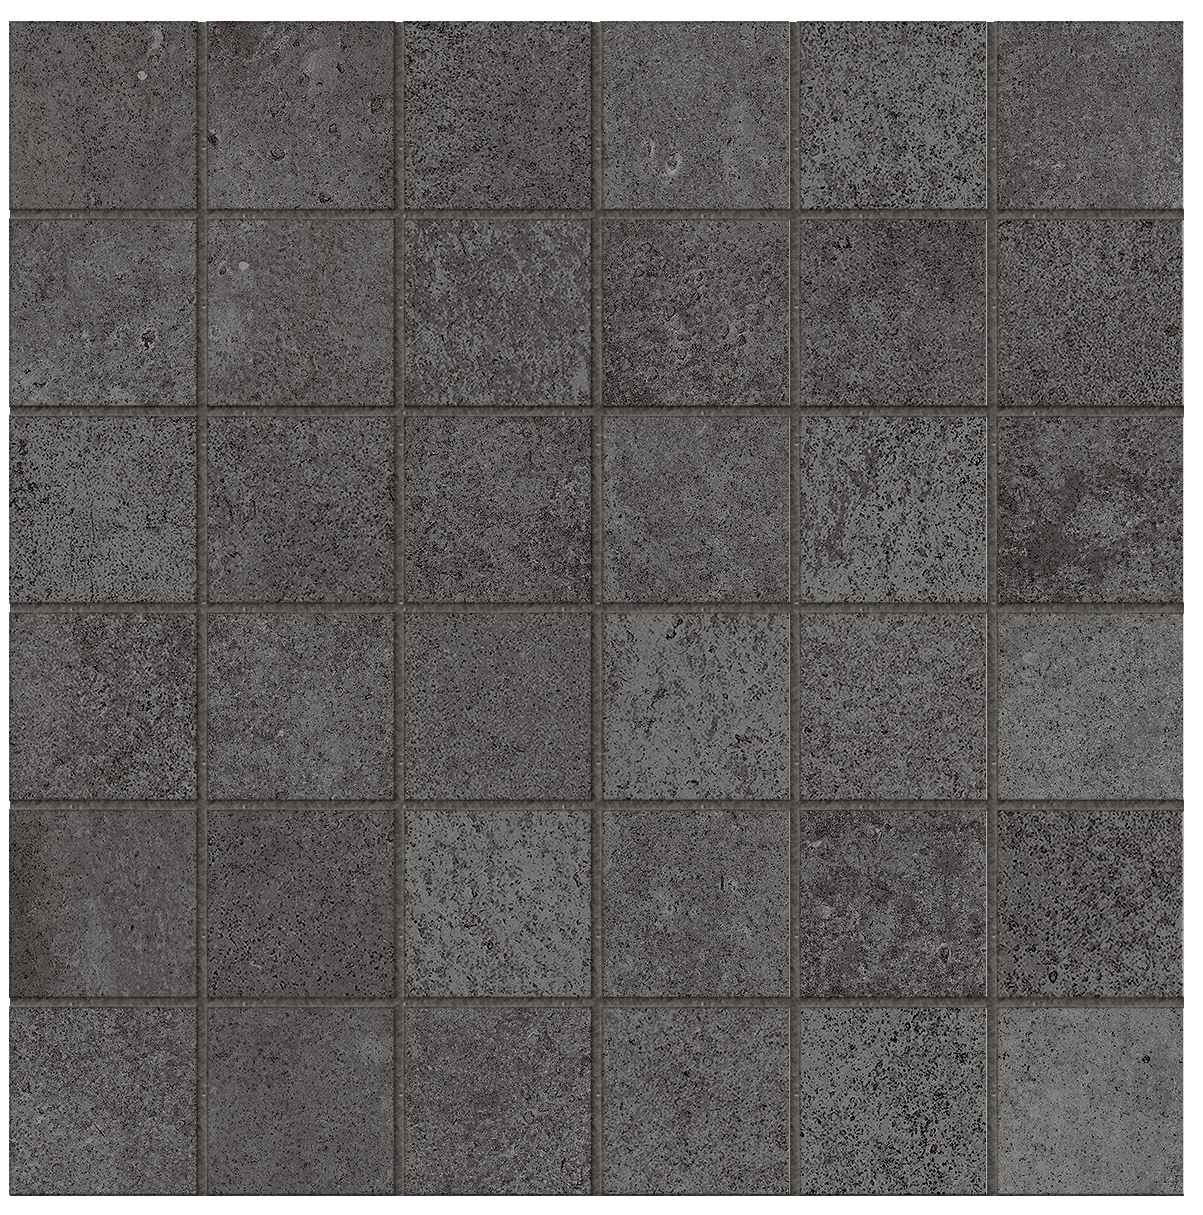 Lea Concreto Dark Naturale – Antibacterial Mosaic 36 LGCC300 30x30cm rectified 9,5mm